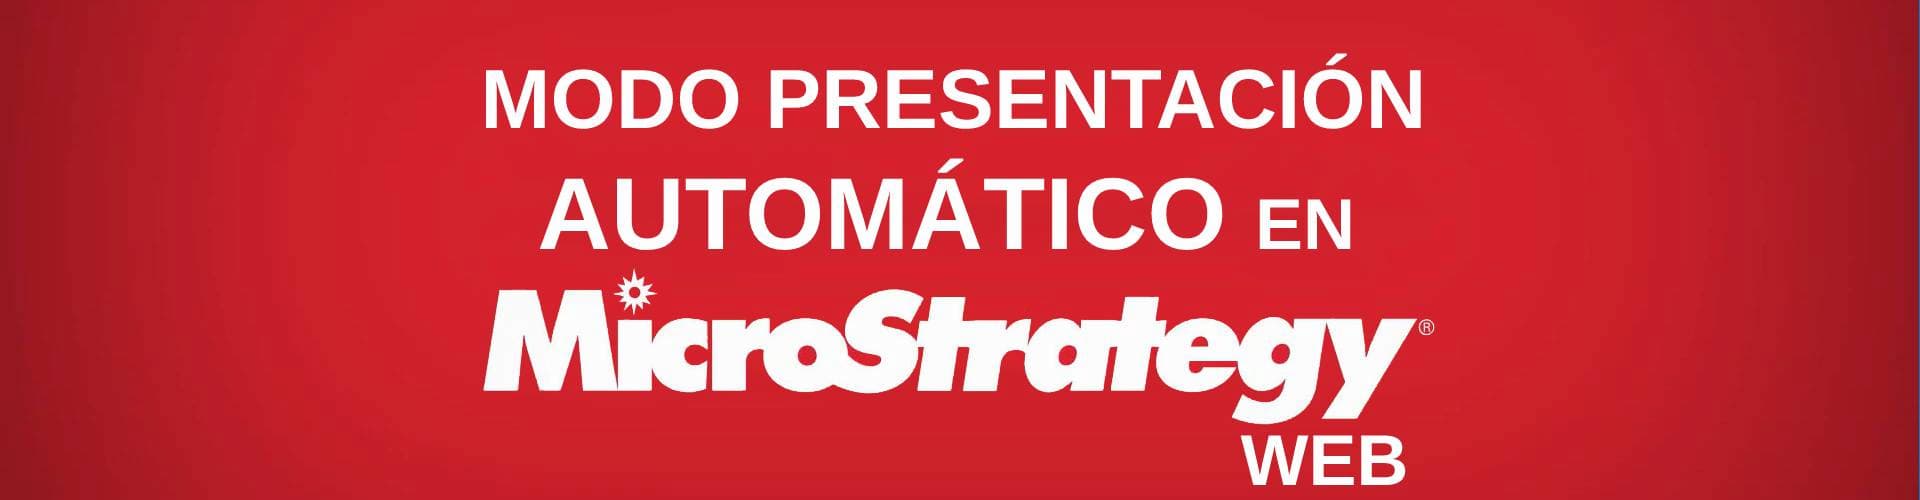 Presentacion_automatico_MicroStrategy